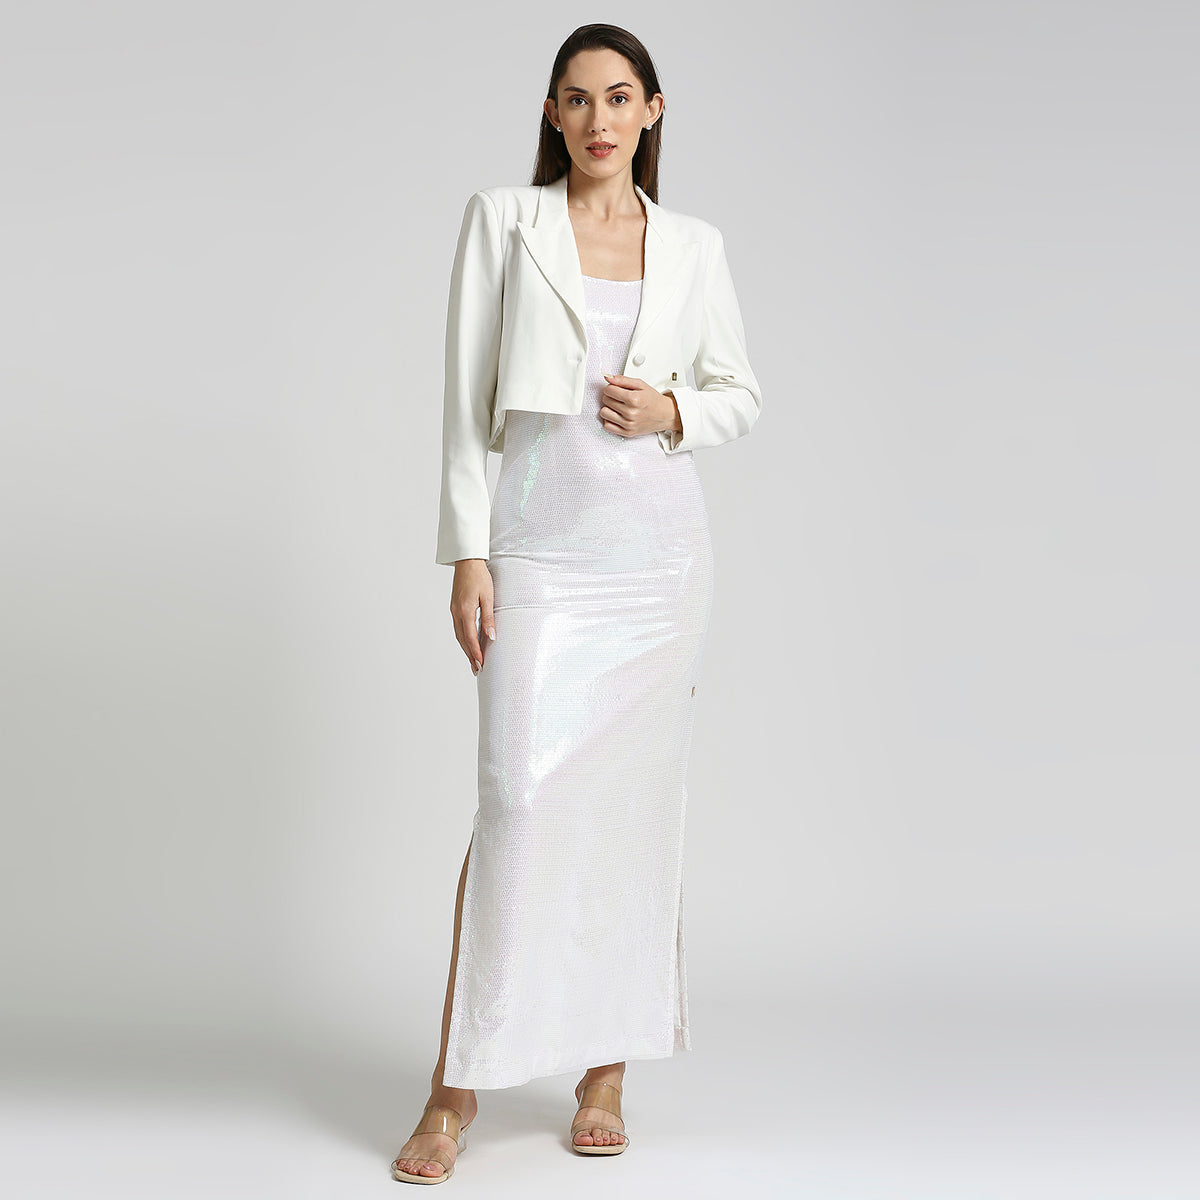 White Sequin Long Slip Dress With White Blazer